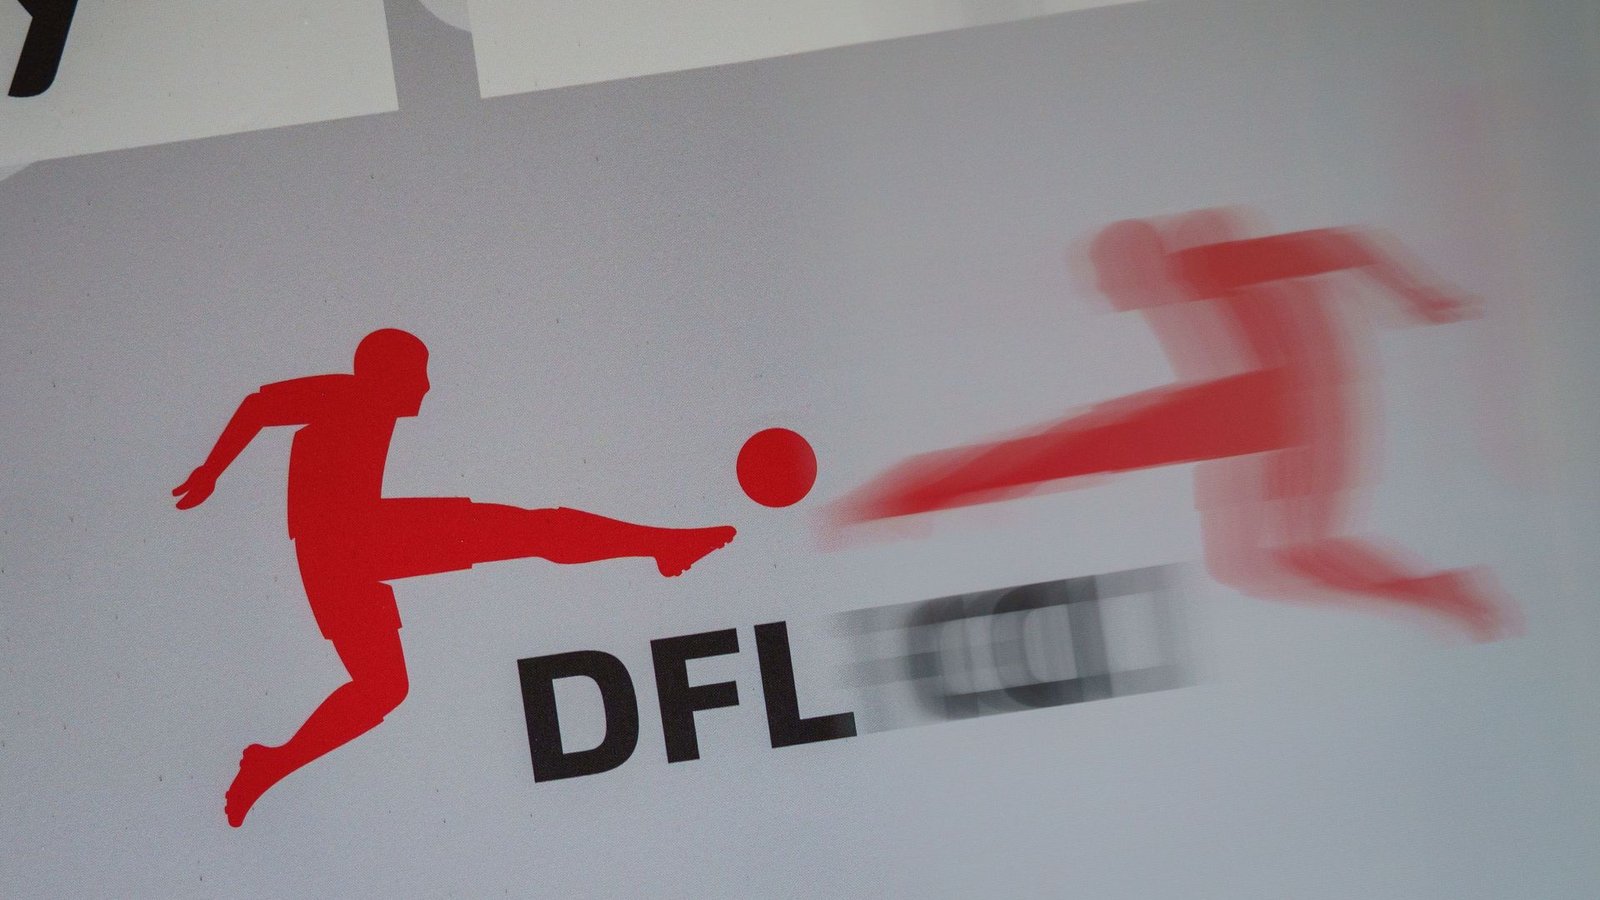 Das Logo der Deutschen Fußball Liga (DFL) spiegelt sich vor Beginn einer Pressekonferenz in einer transparenten Trennscheibe.Foto: Frank Rumpenhorst/dpa